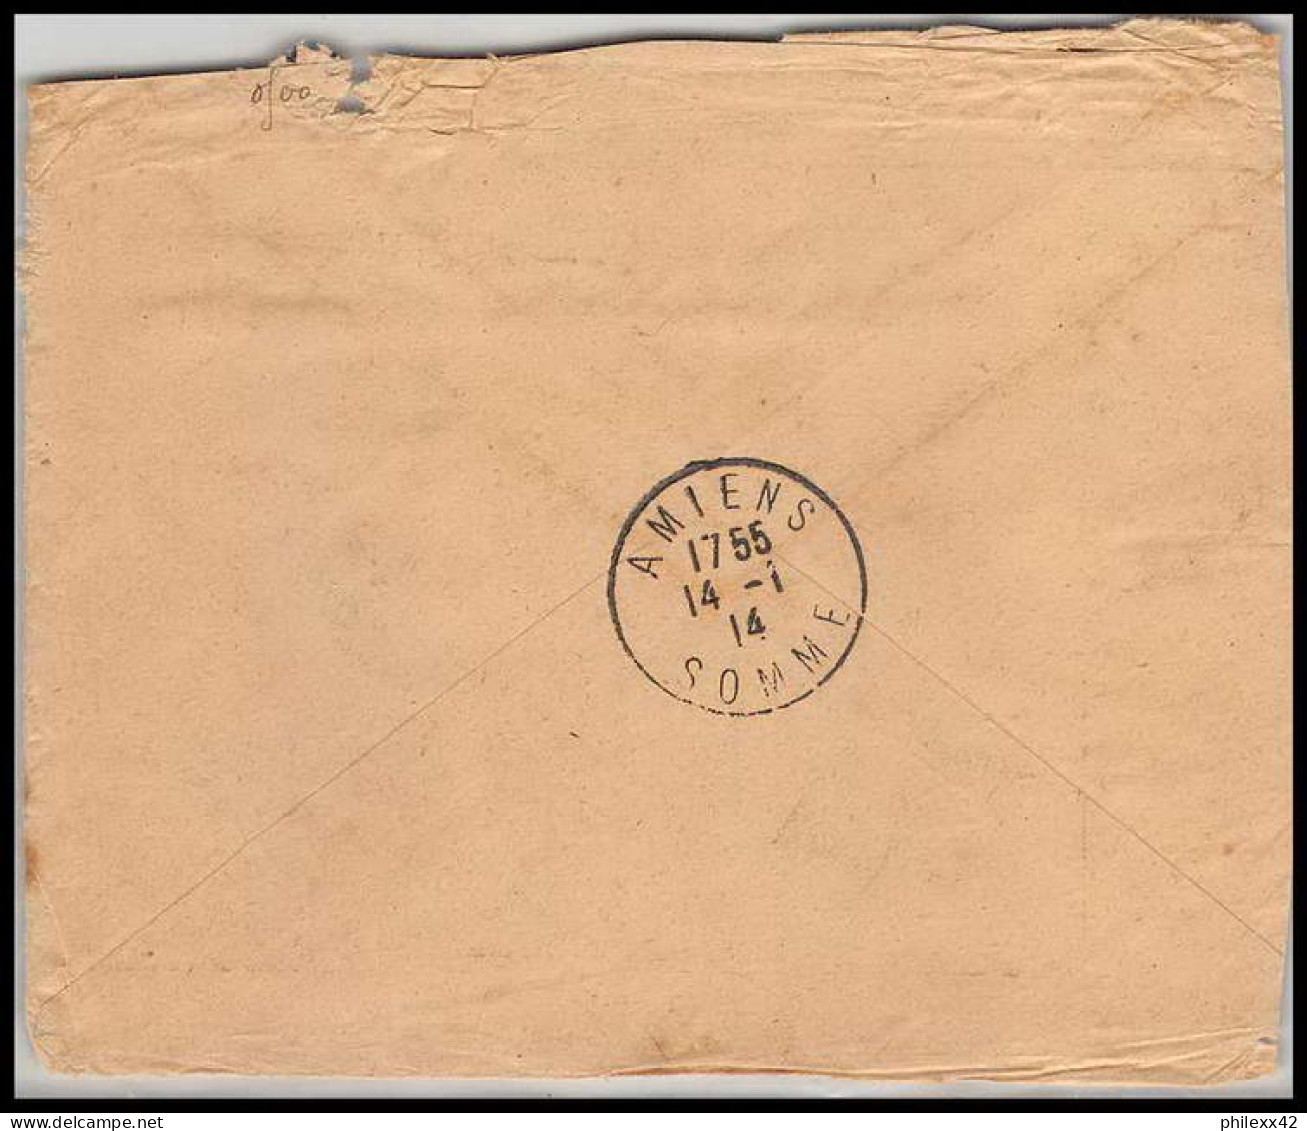 collection N°15 marcophilie militaire lot de 52 lettres covers guerre 1914 départ - de 2 euros pièce